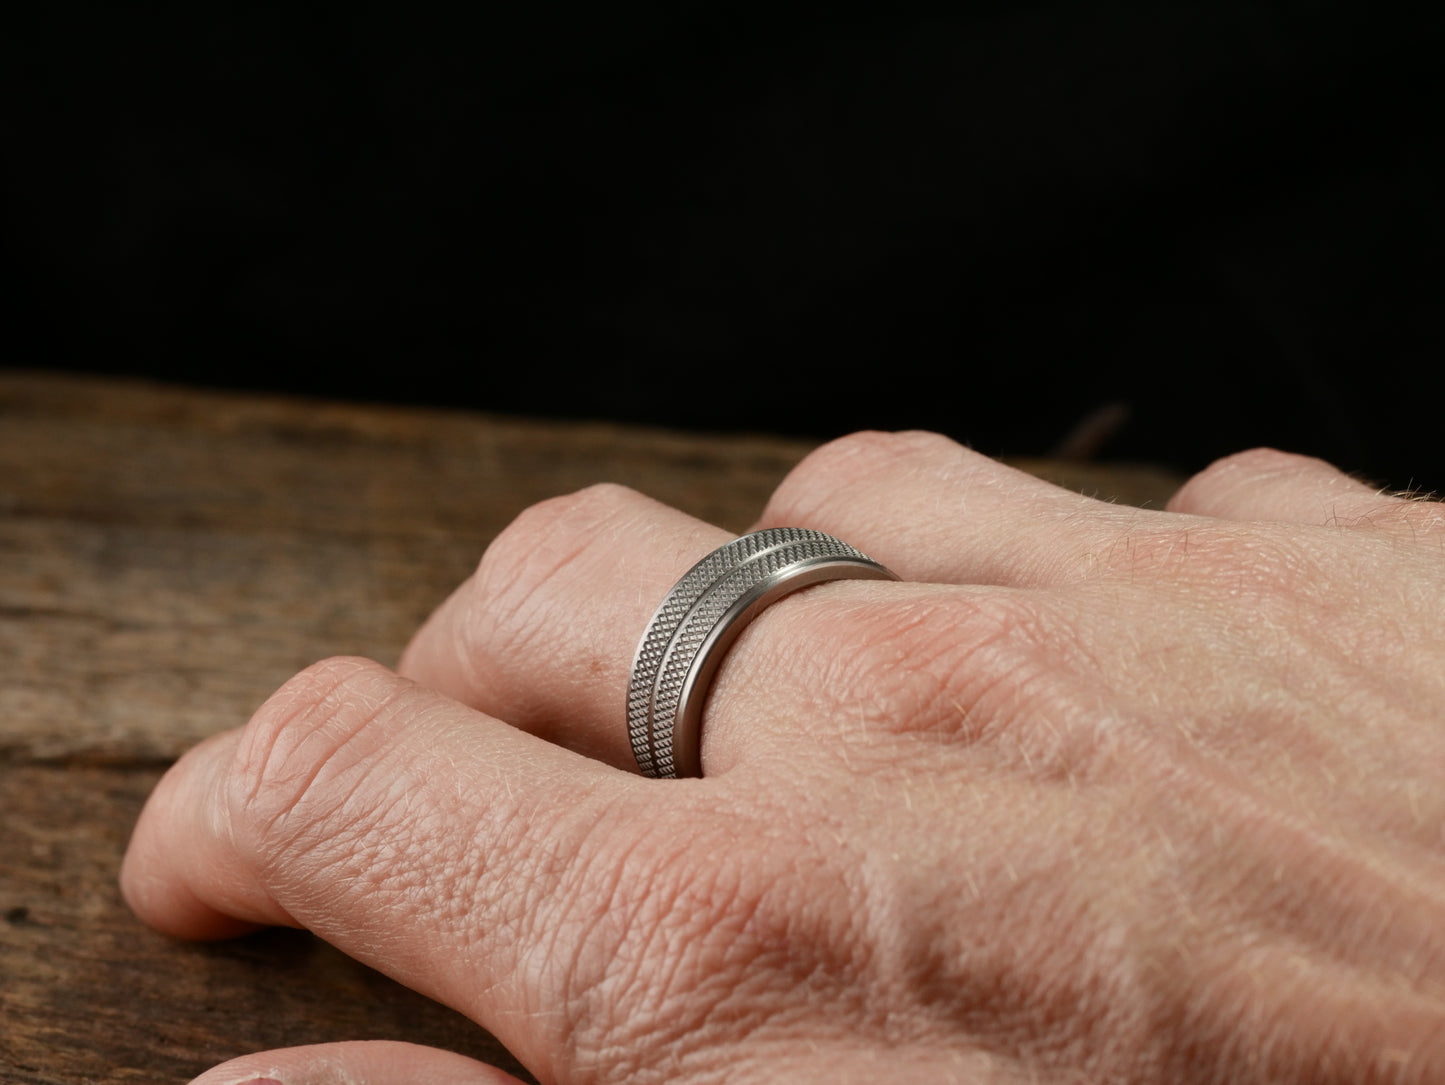 Apex - Knurled Titanium Ring